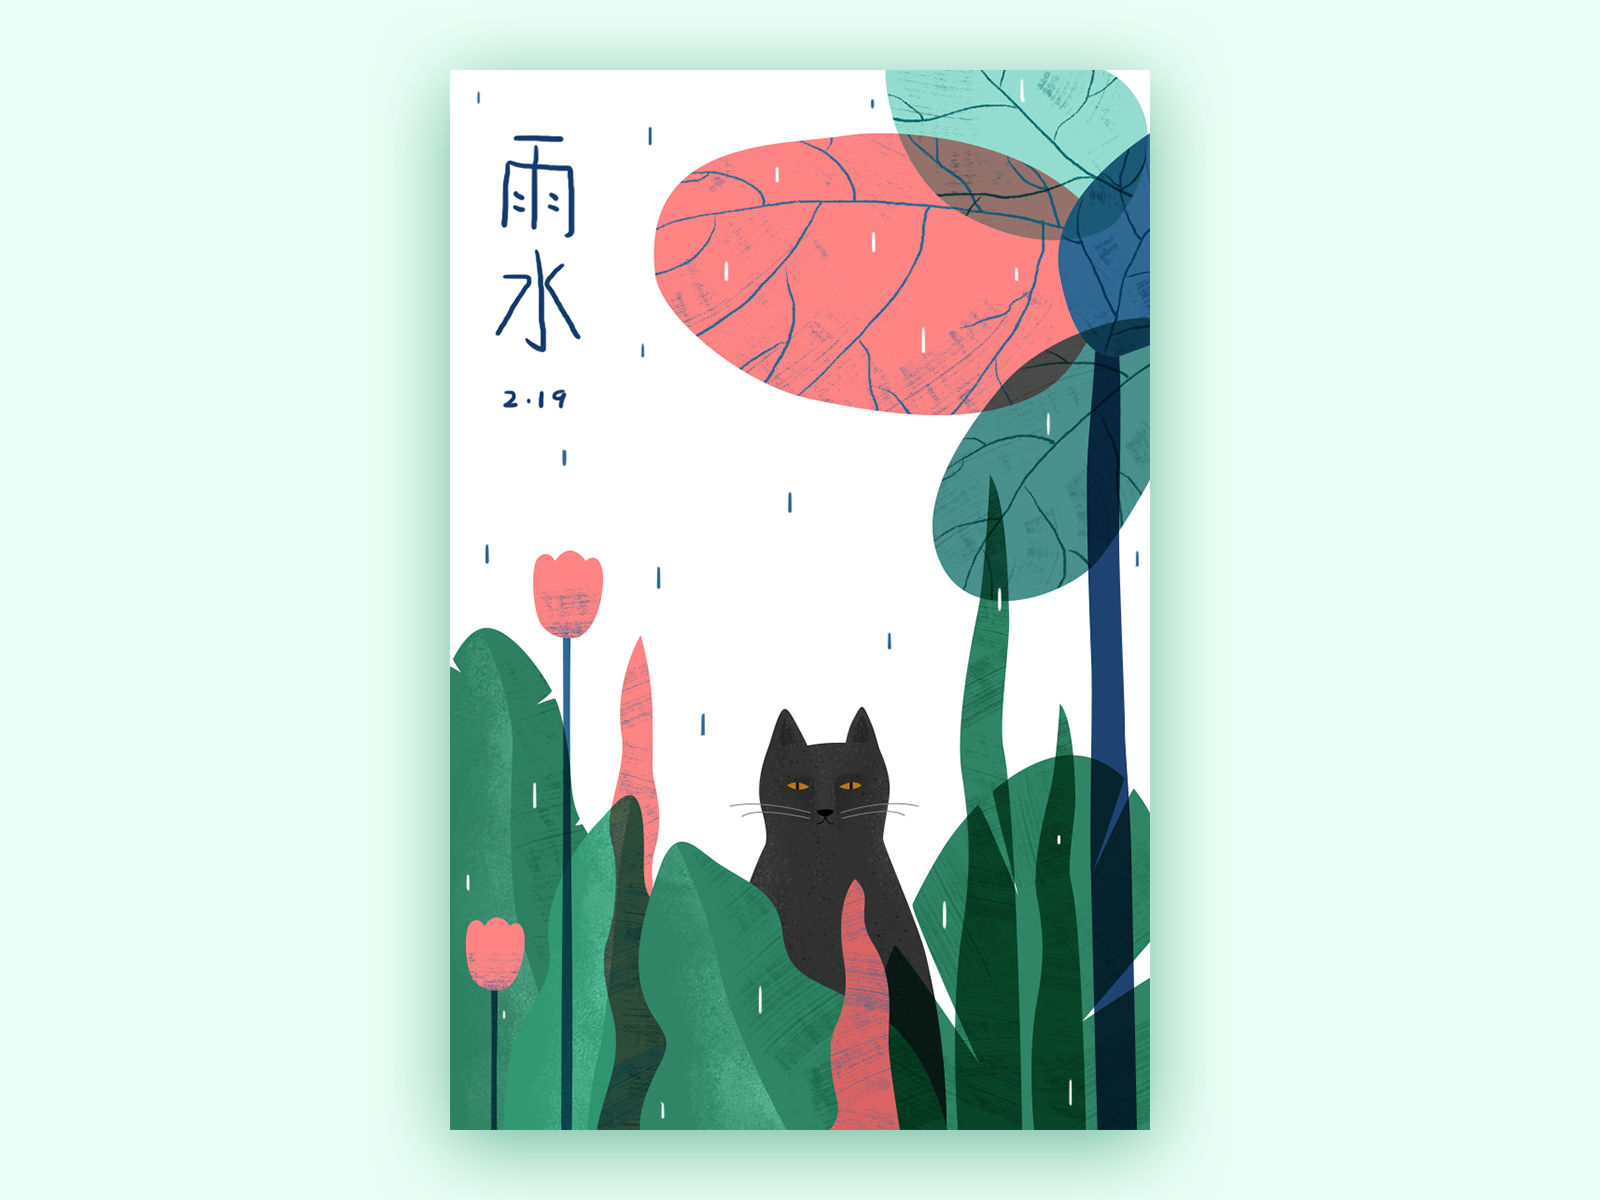 24节气-雨水 cat in the rain cat green illustration rain